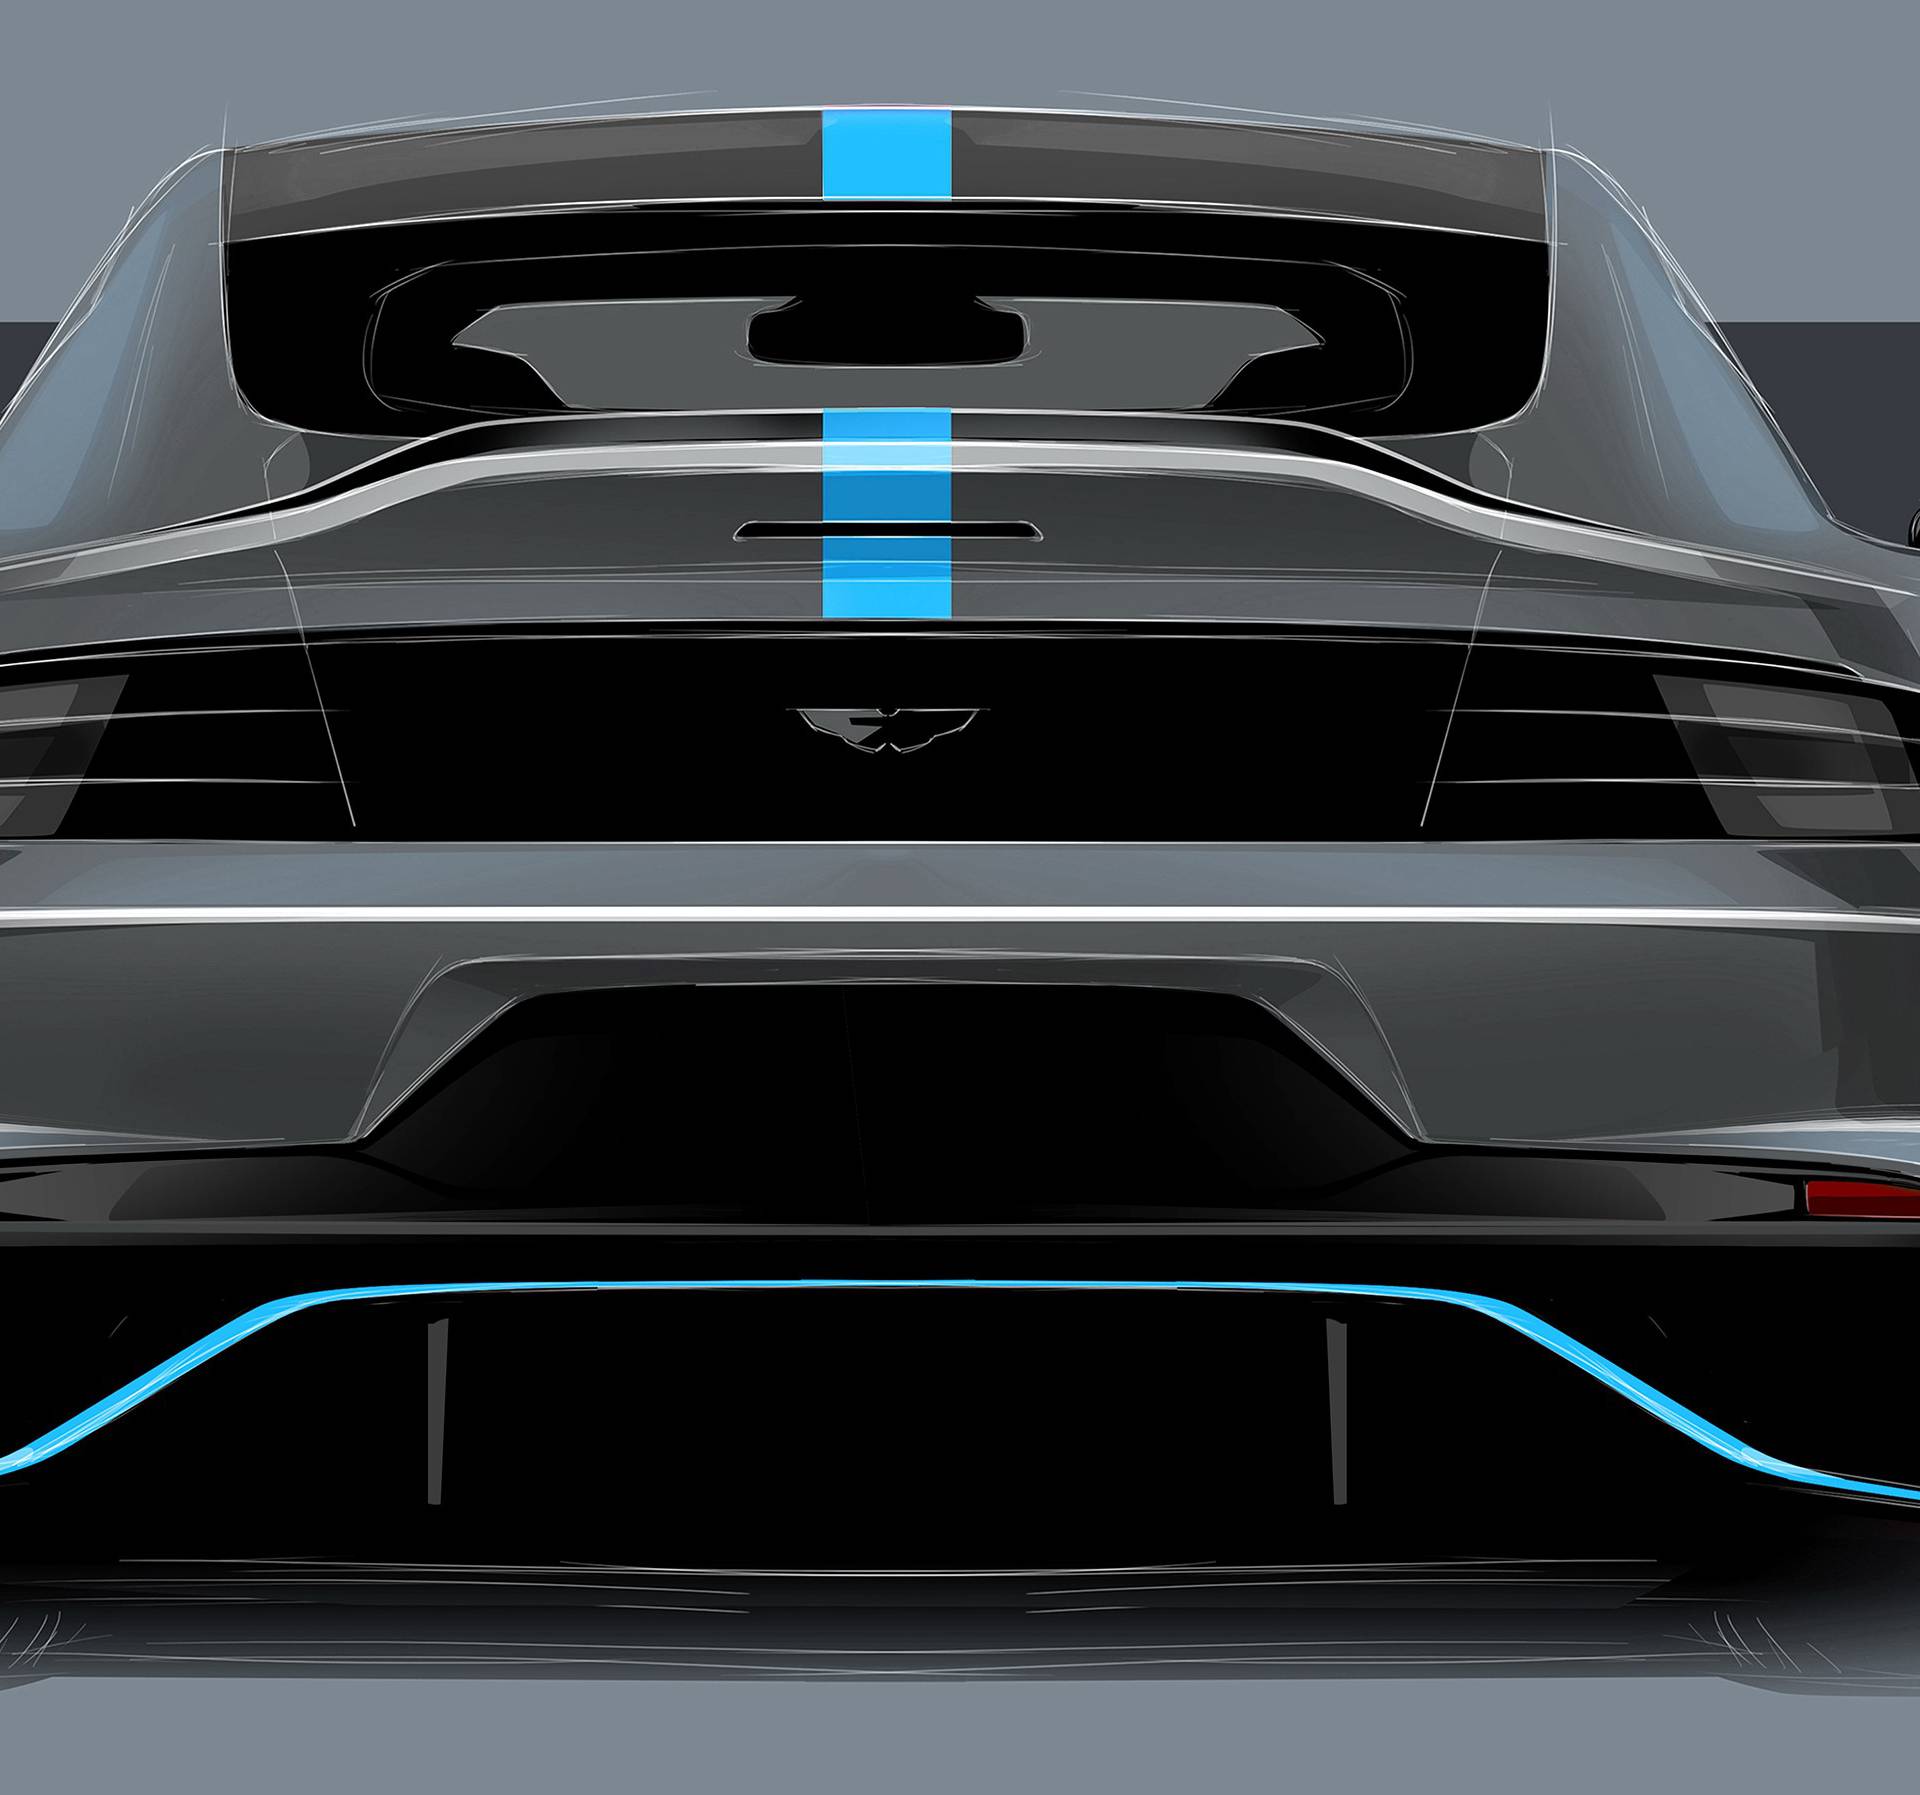 Elektro jurilica za dva milijuna kuna: Dolazi novi Aston Martin